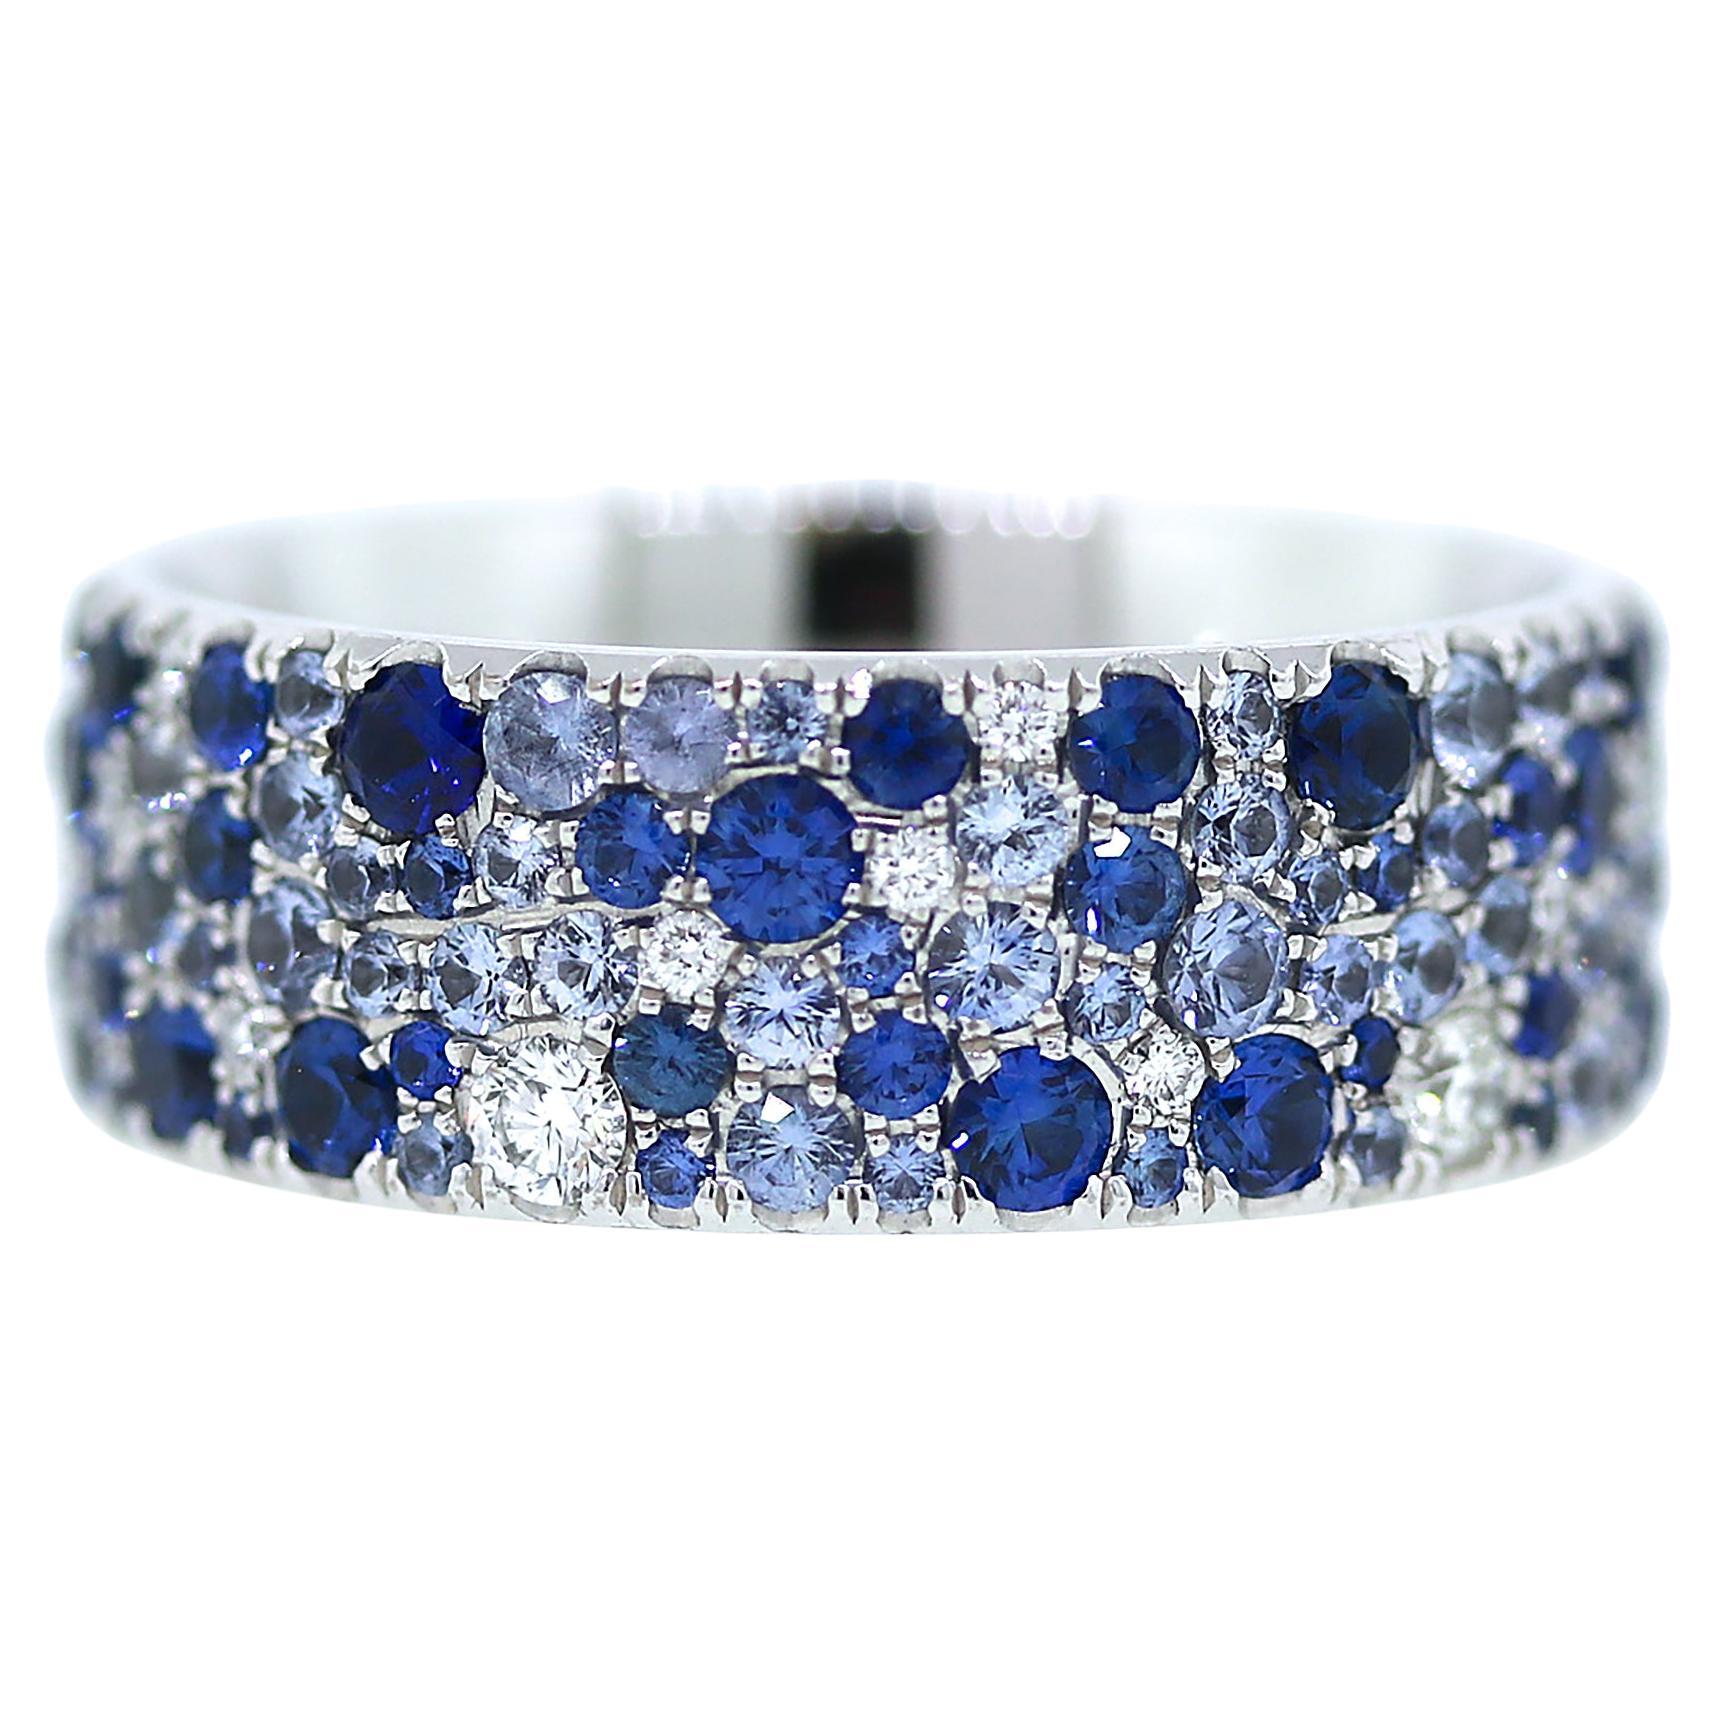 Tiffany and Co. Bague Metro collection avec saphirs bleus et diamants